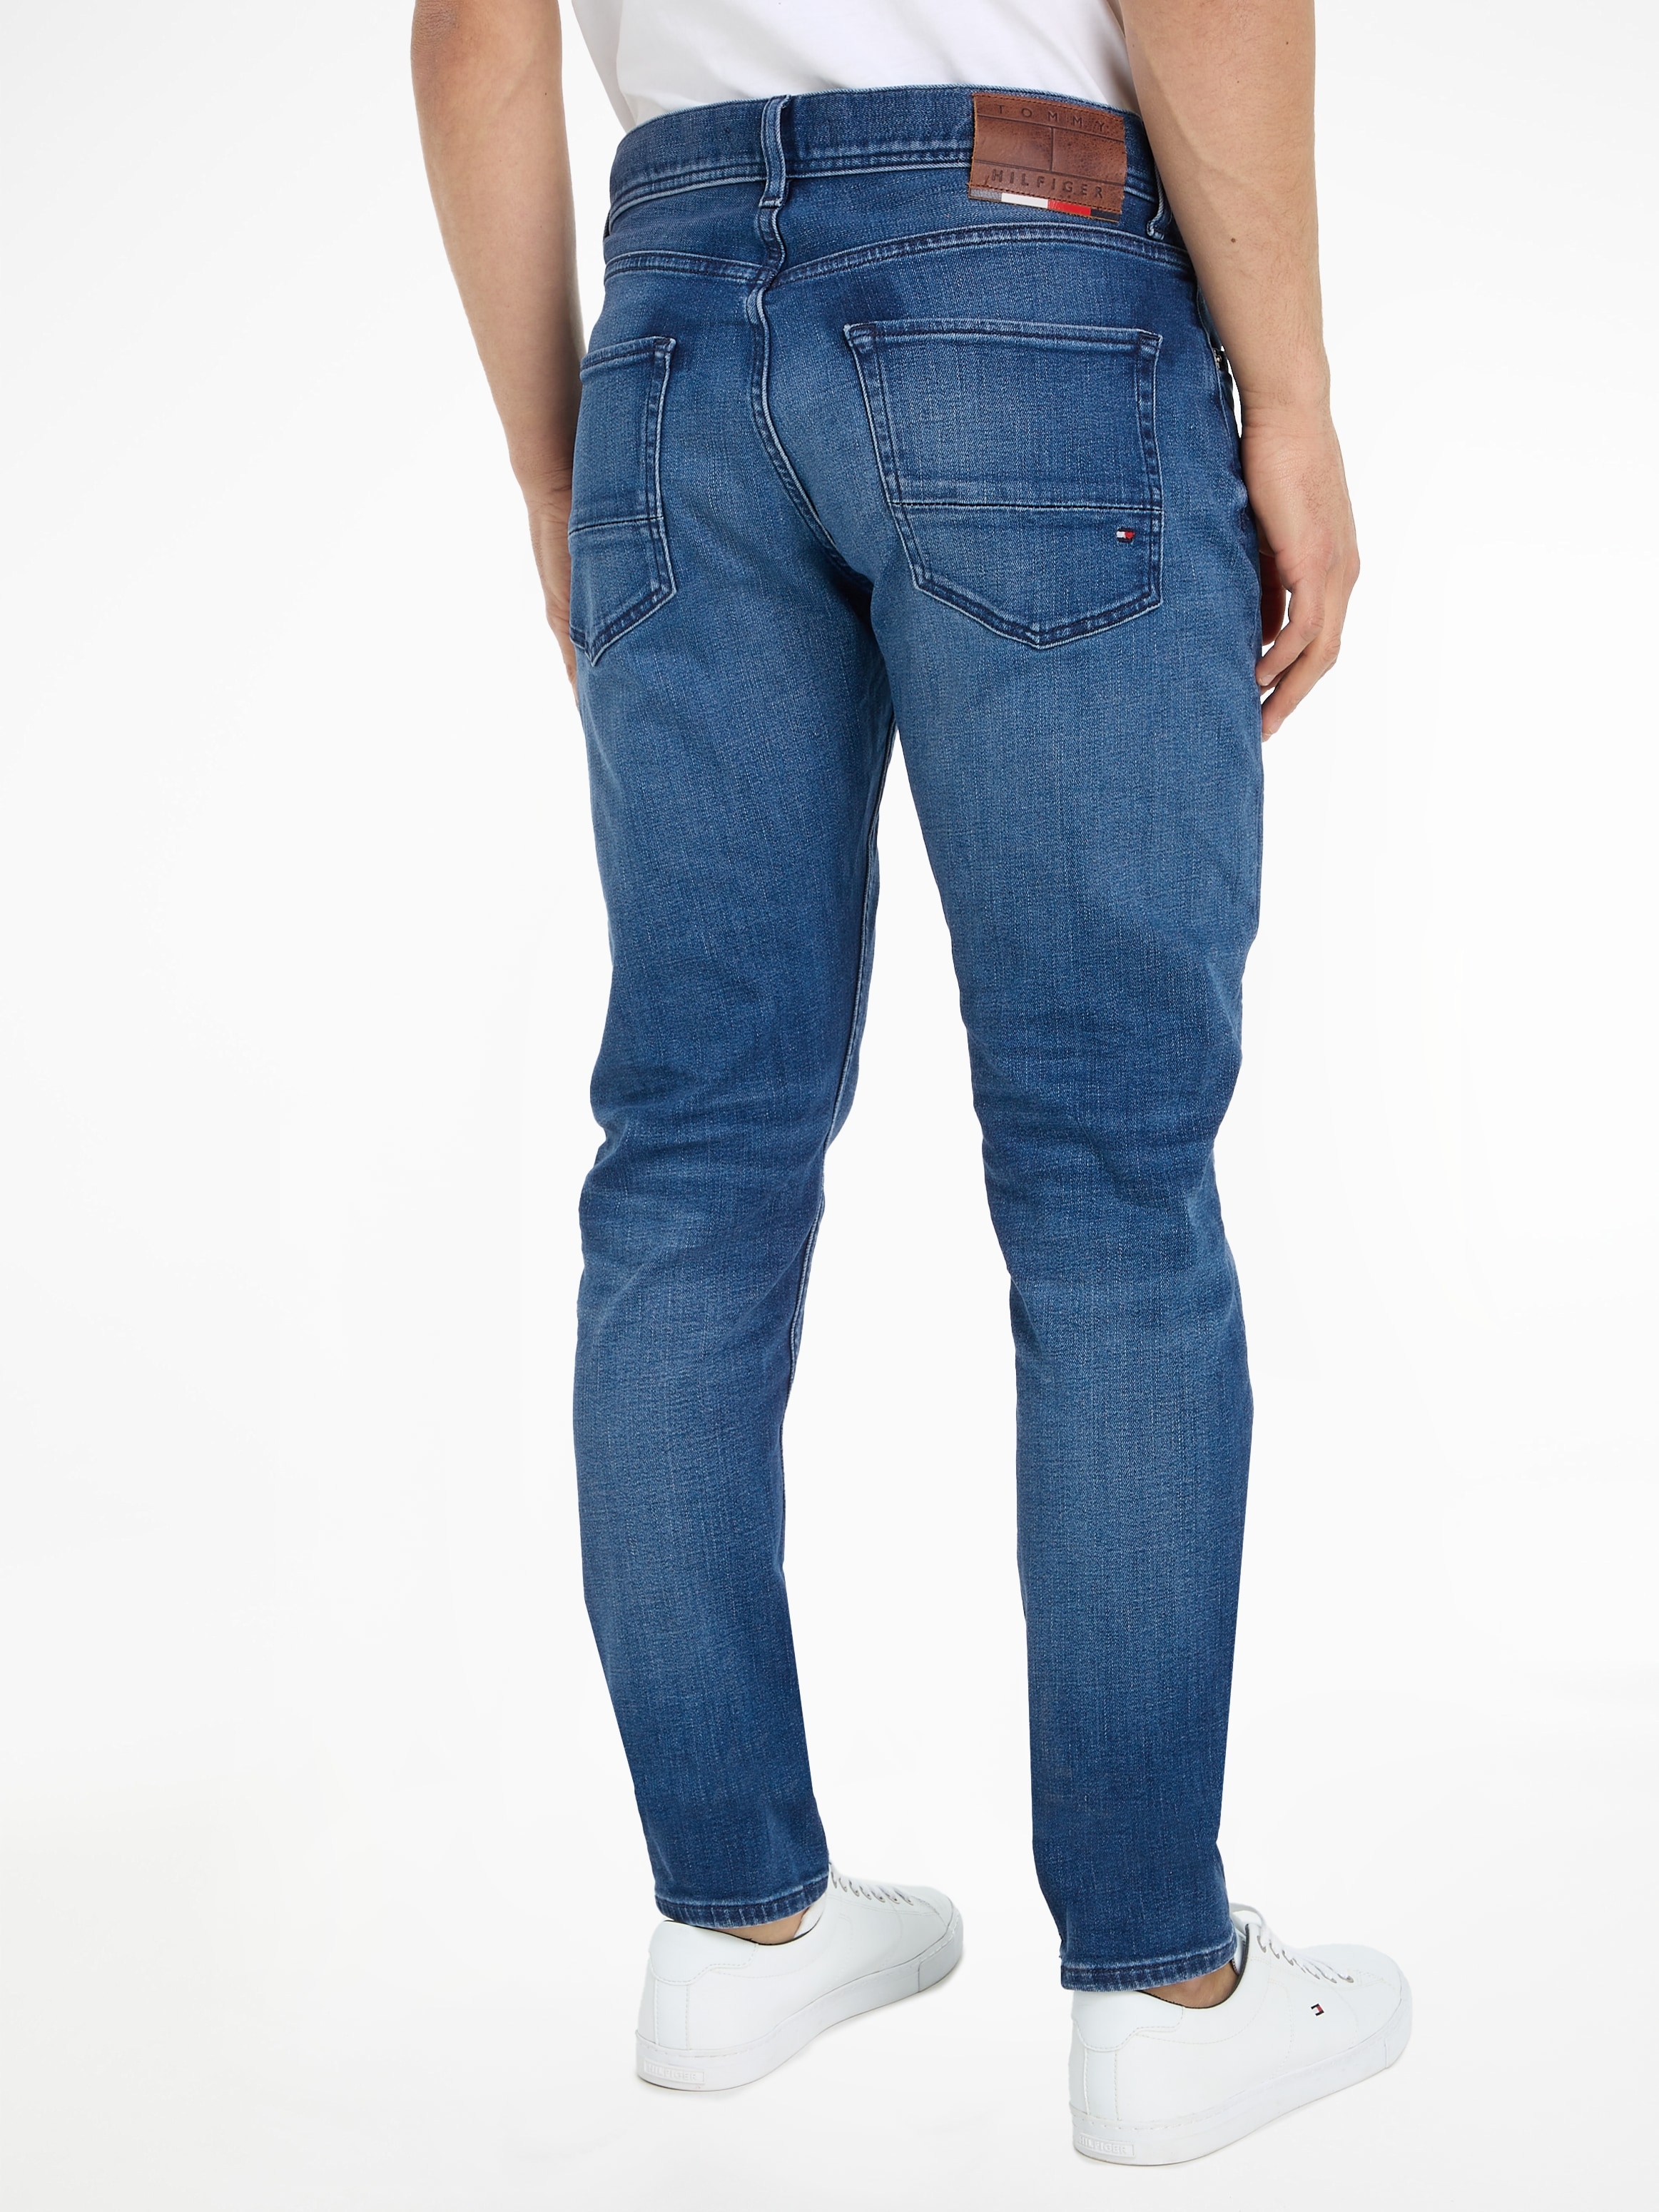 ➤ Bequeme Jeans ohne Mindestbestellwert - versandkostenfrei bestellen